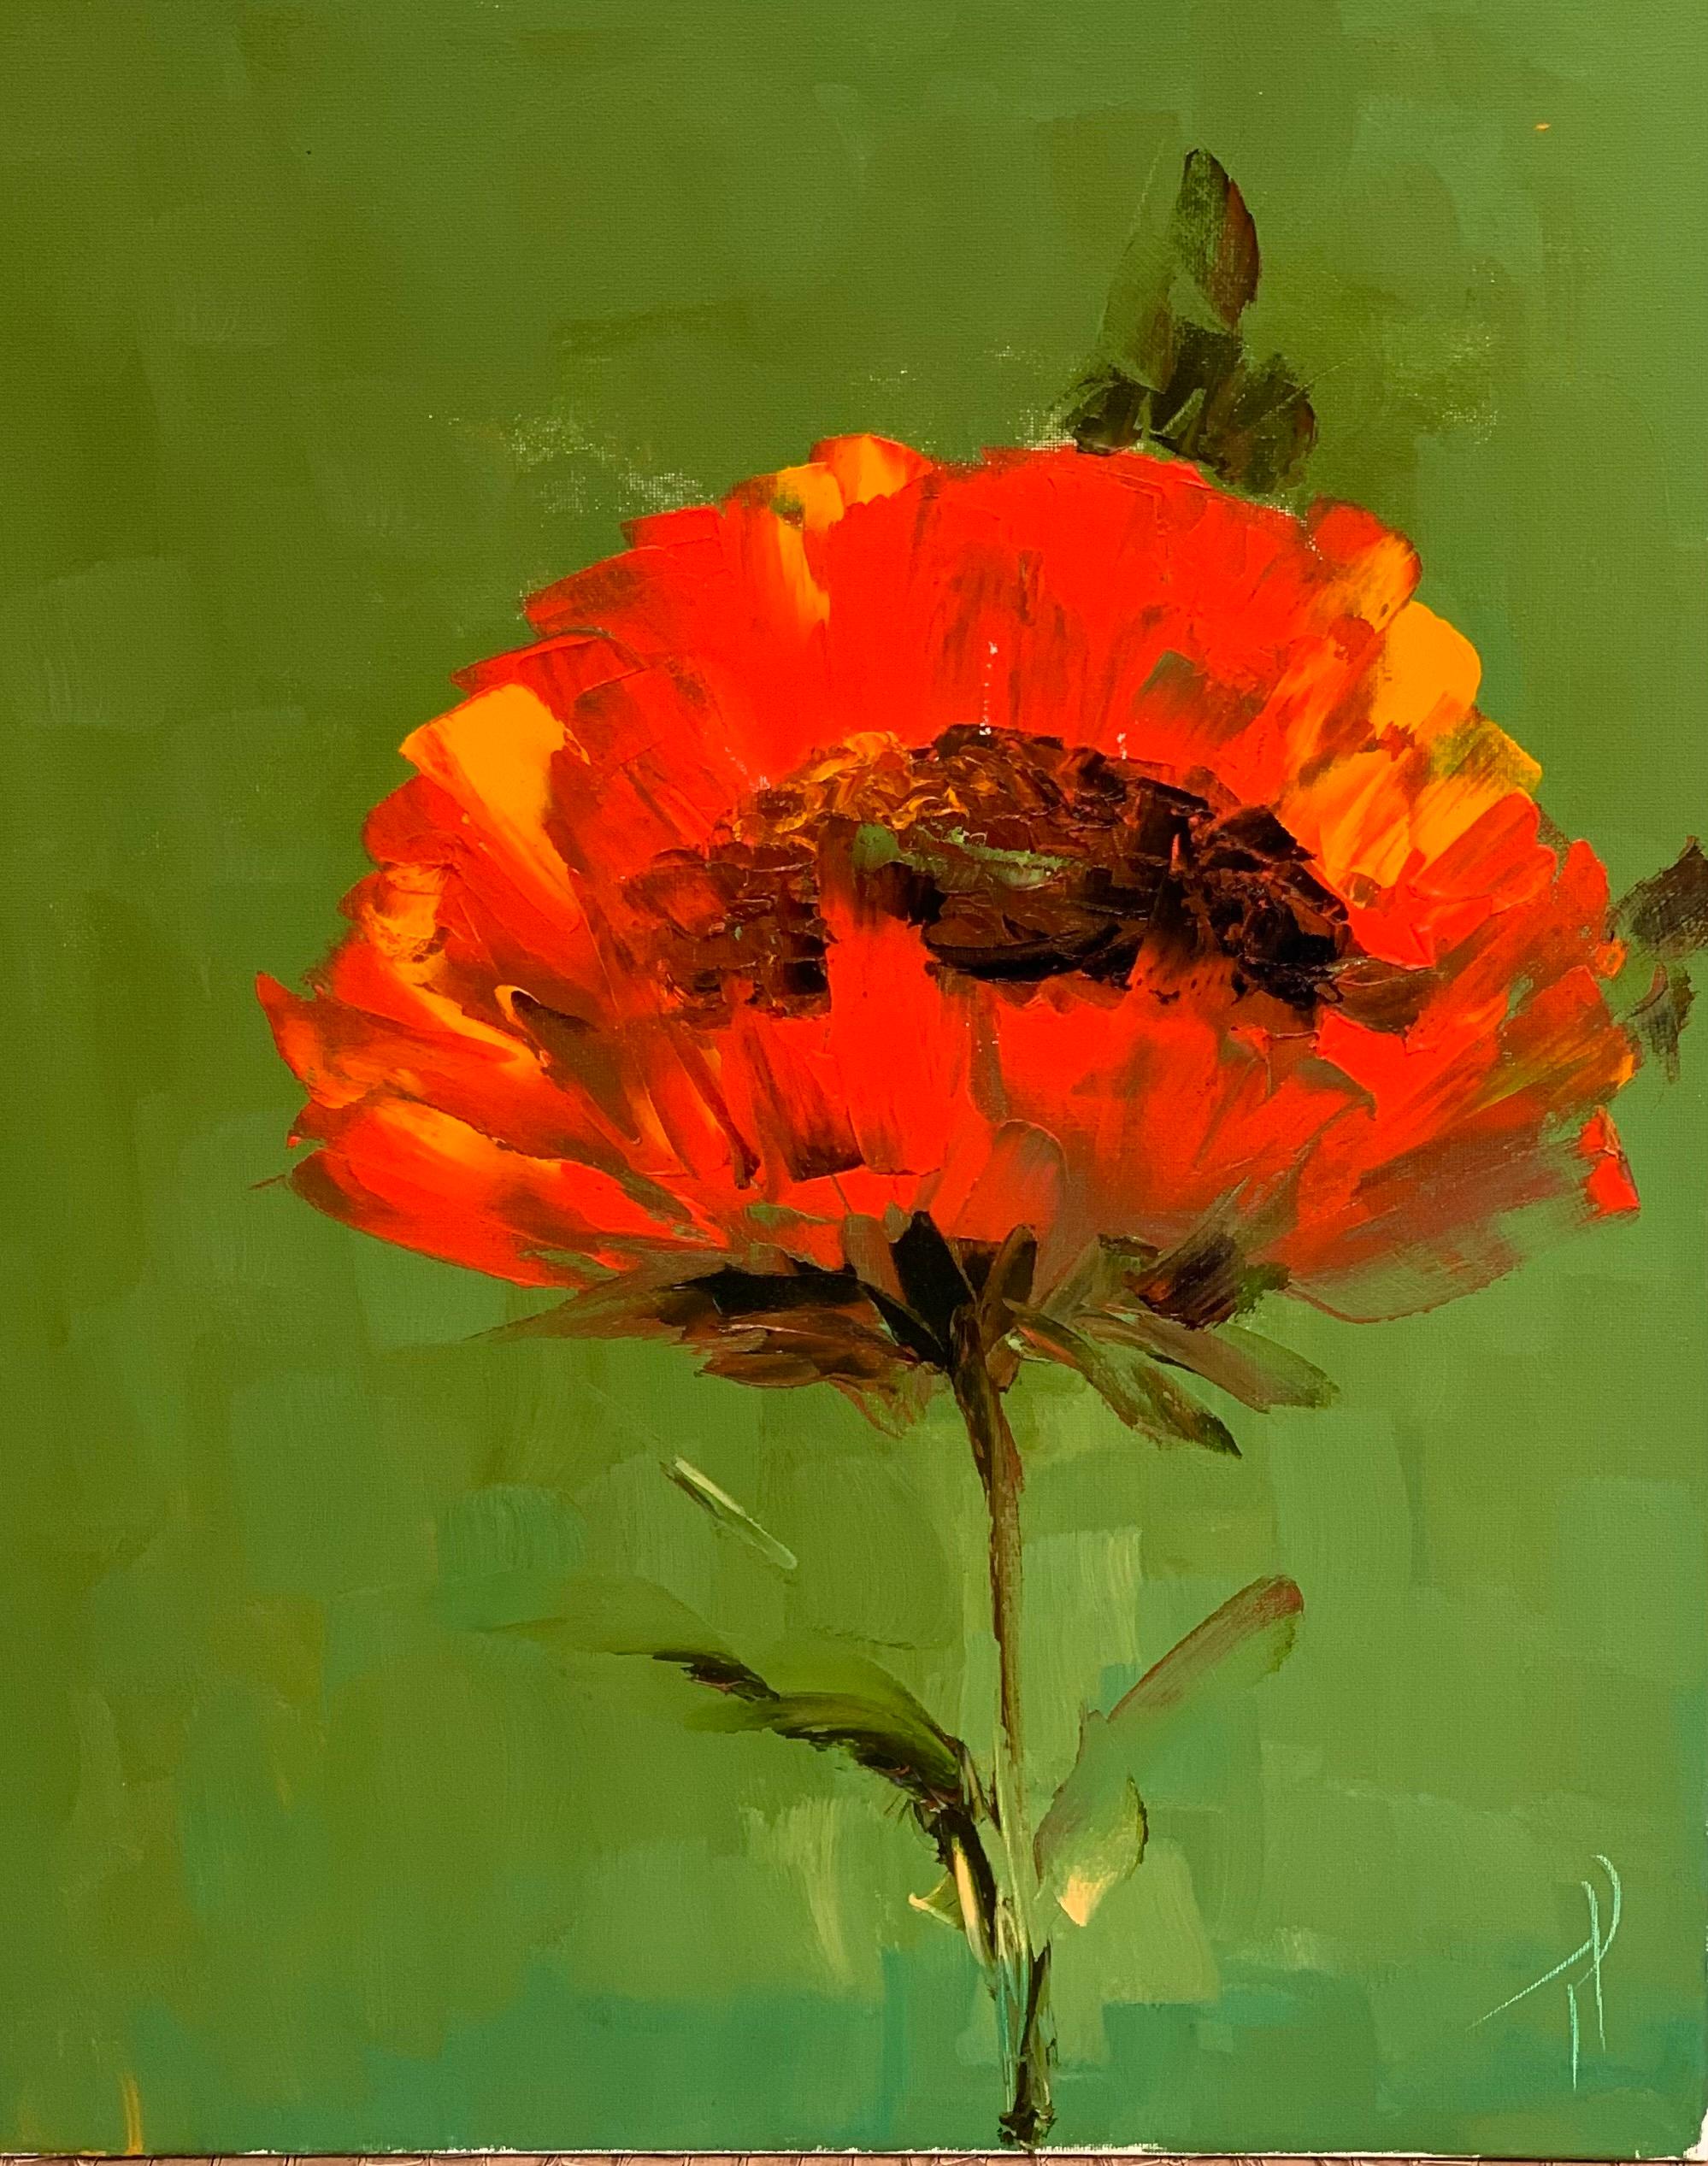 "I'm Still July" est une peinture à l'huile sur toile 20x16 de l'artiste Tershovska. Le produit présenté est d'un rouge vif  sur un fond vert foncé contrasté. L'utilisation d'une peinture épaisse et expressive donne de la vie et de l'expression à